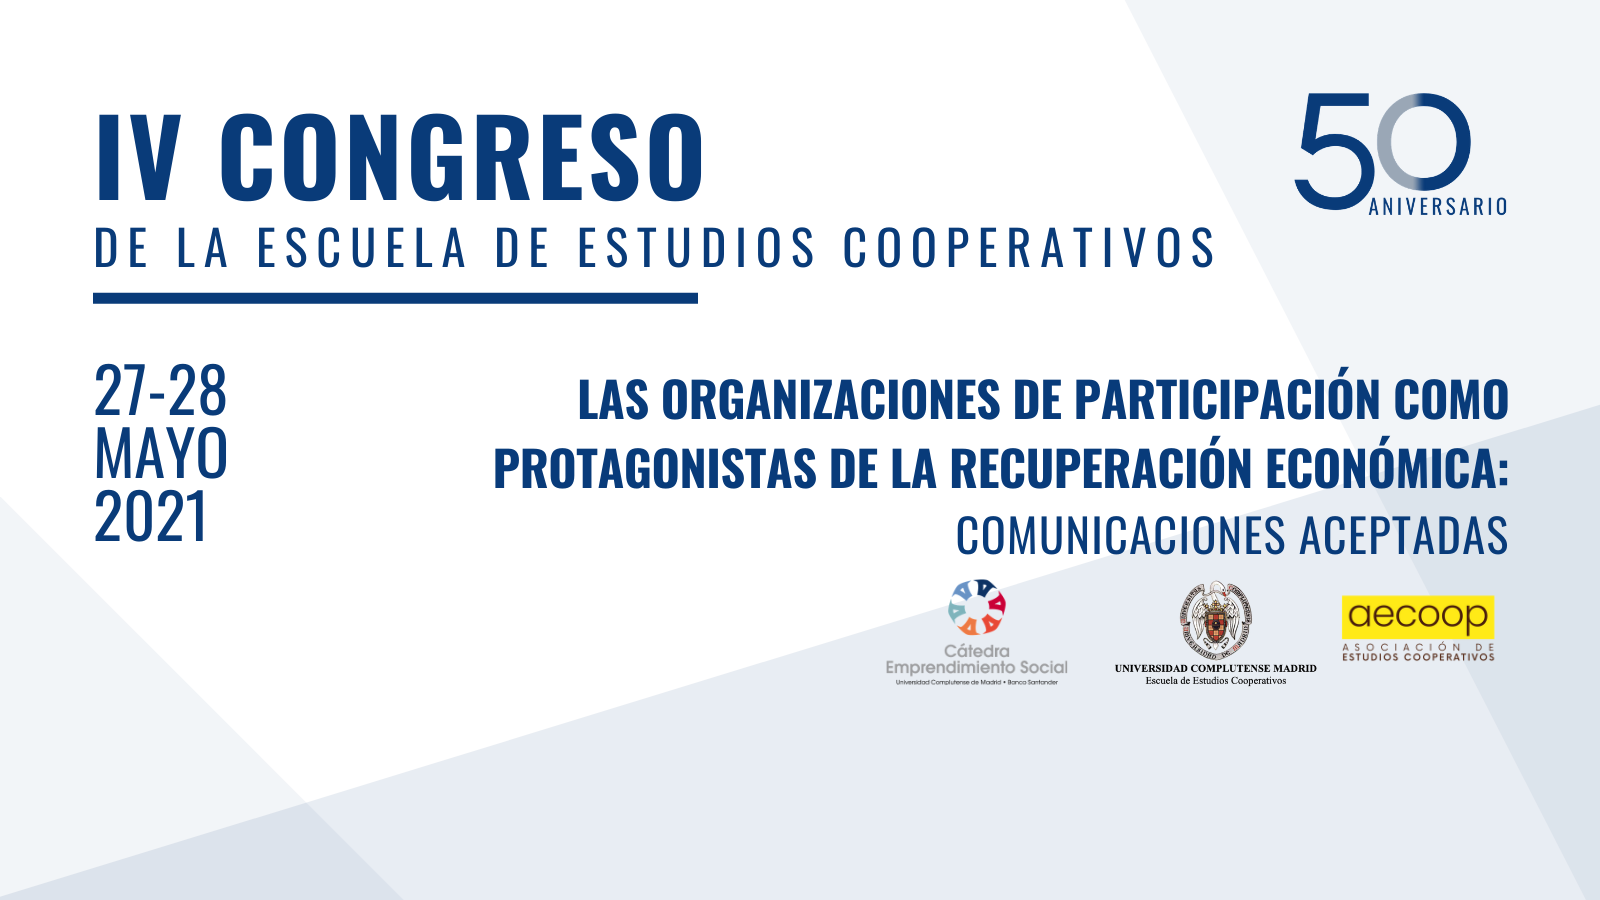 Consulta el programa del IV Congreso organizado por la Escuela de Estudios Cooperativos